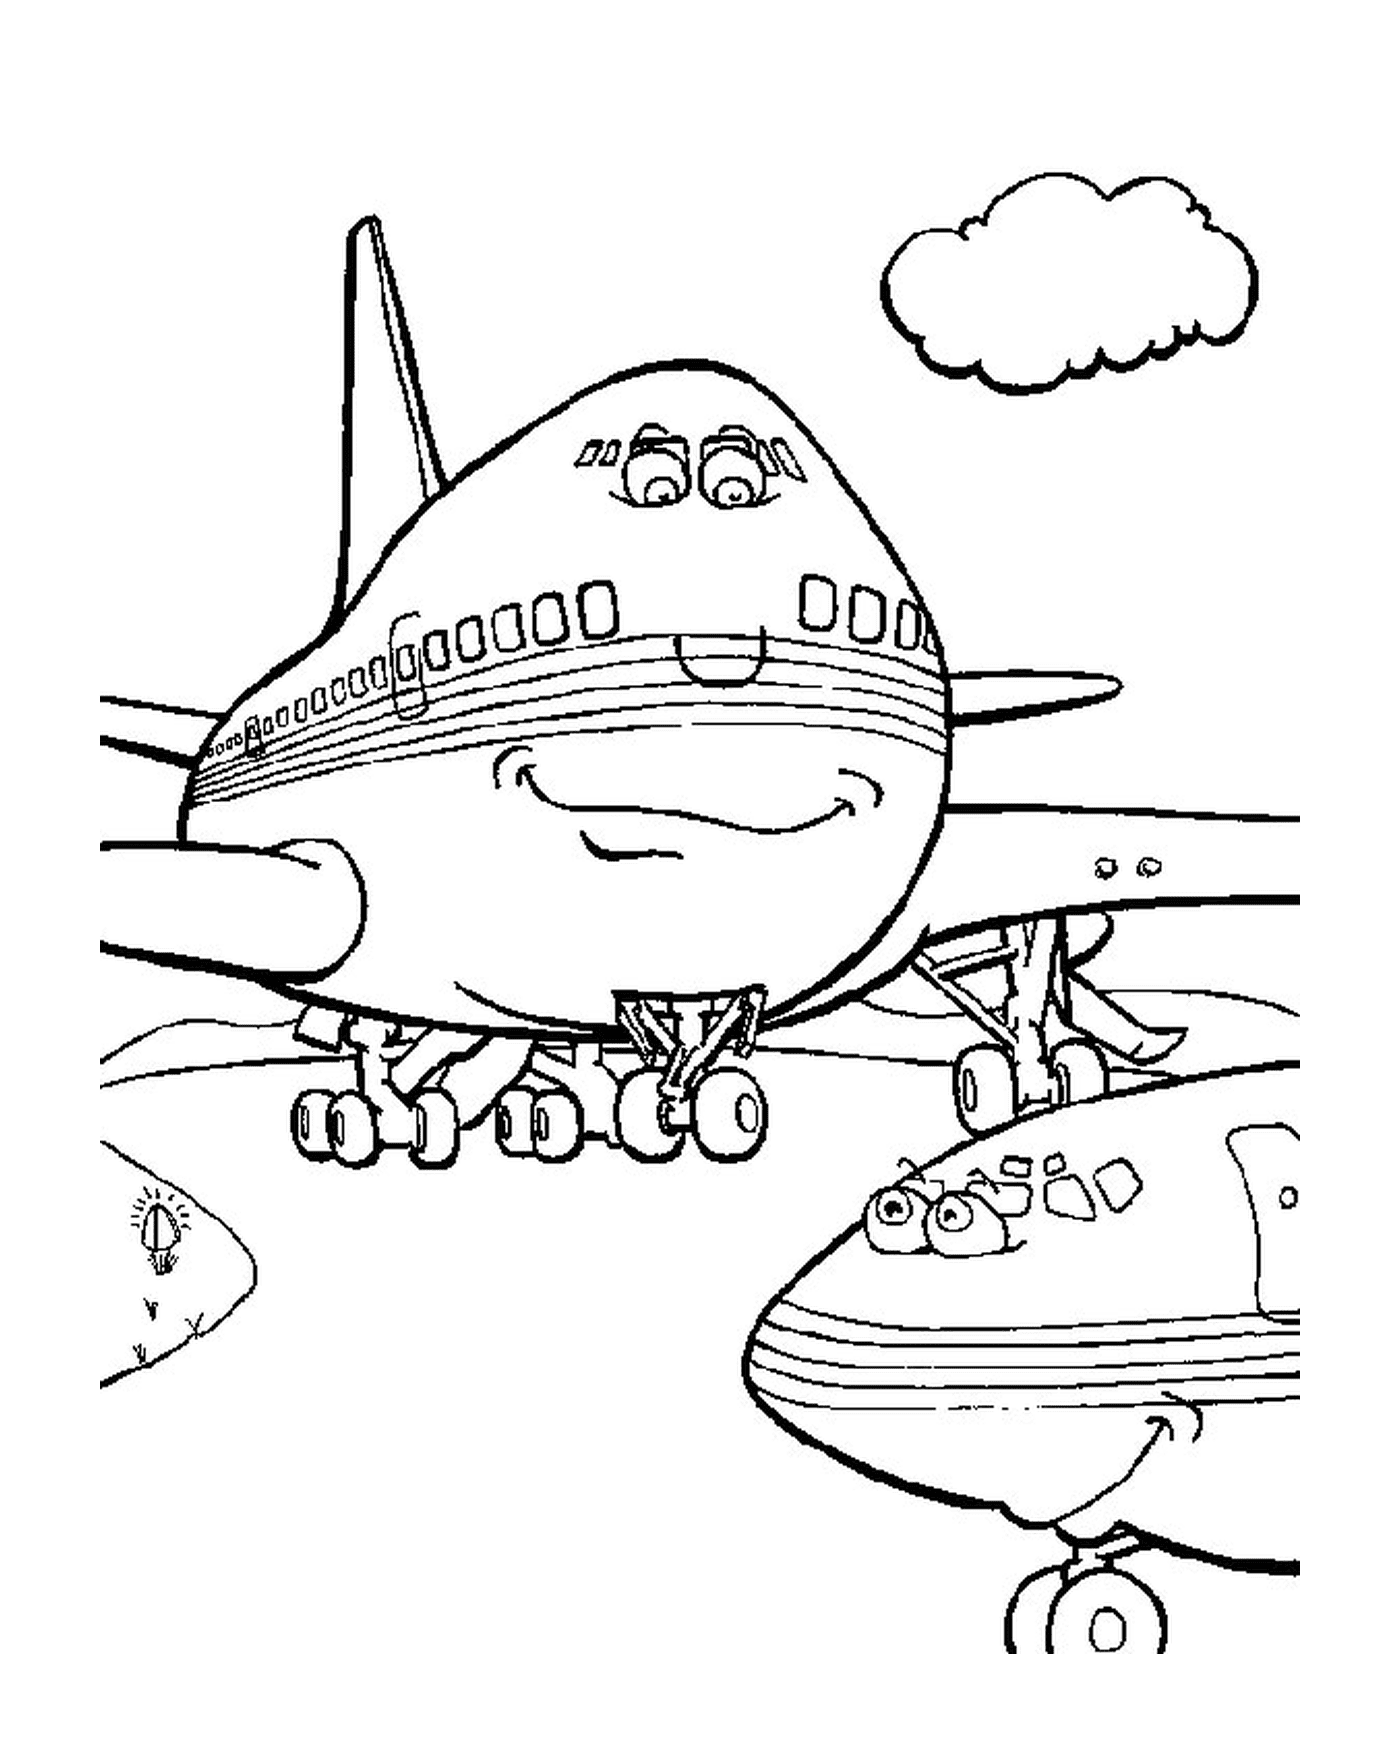  Un avión 